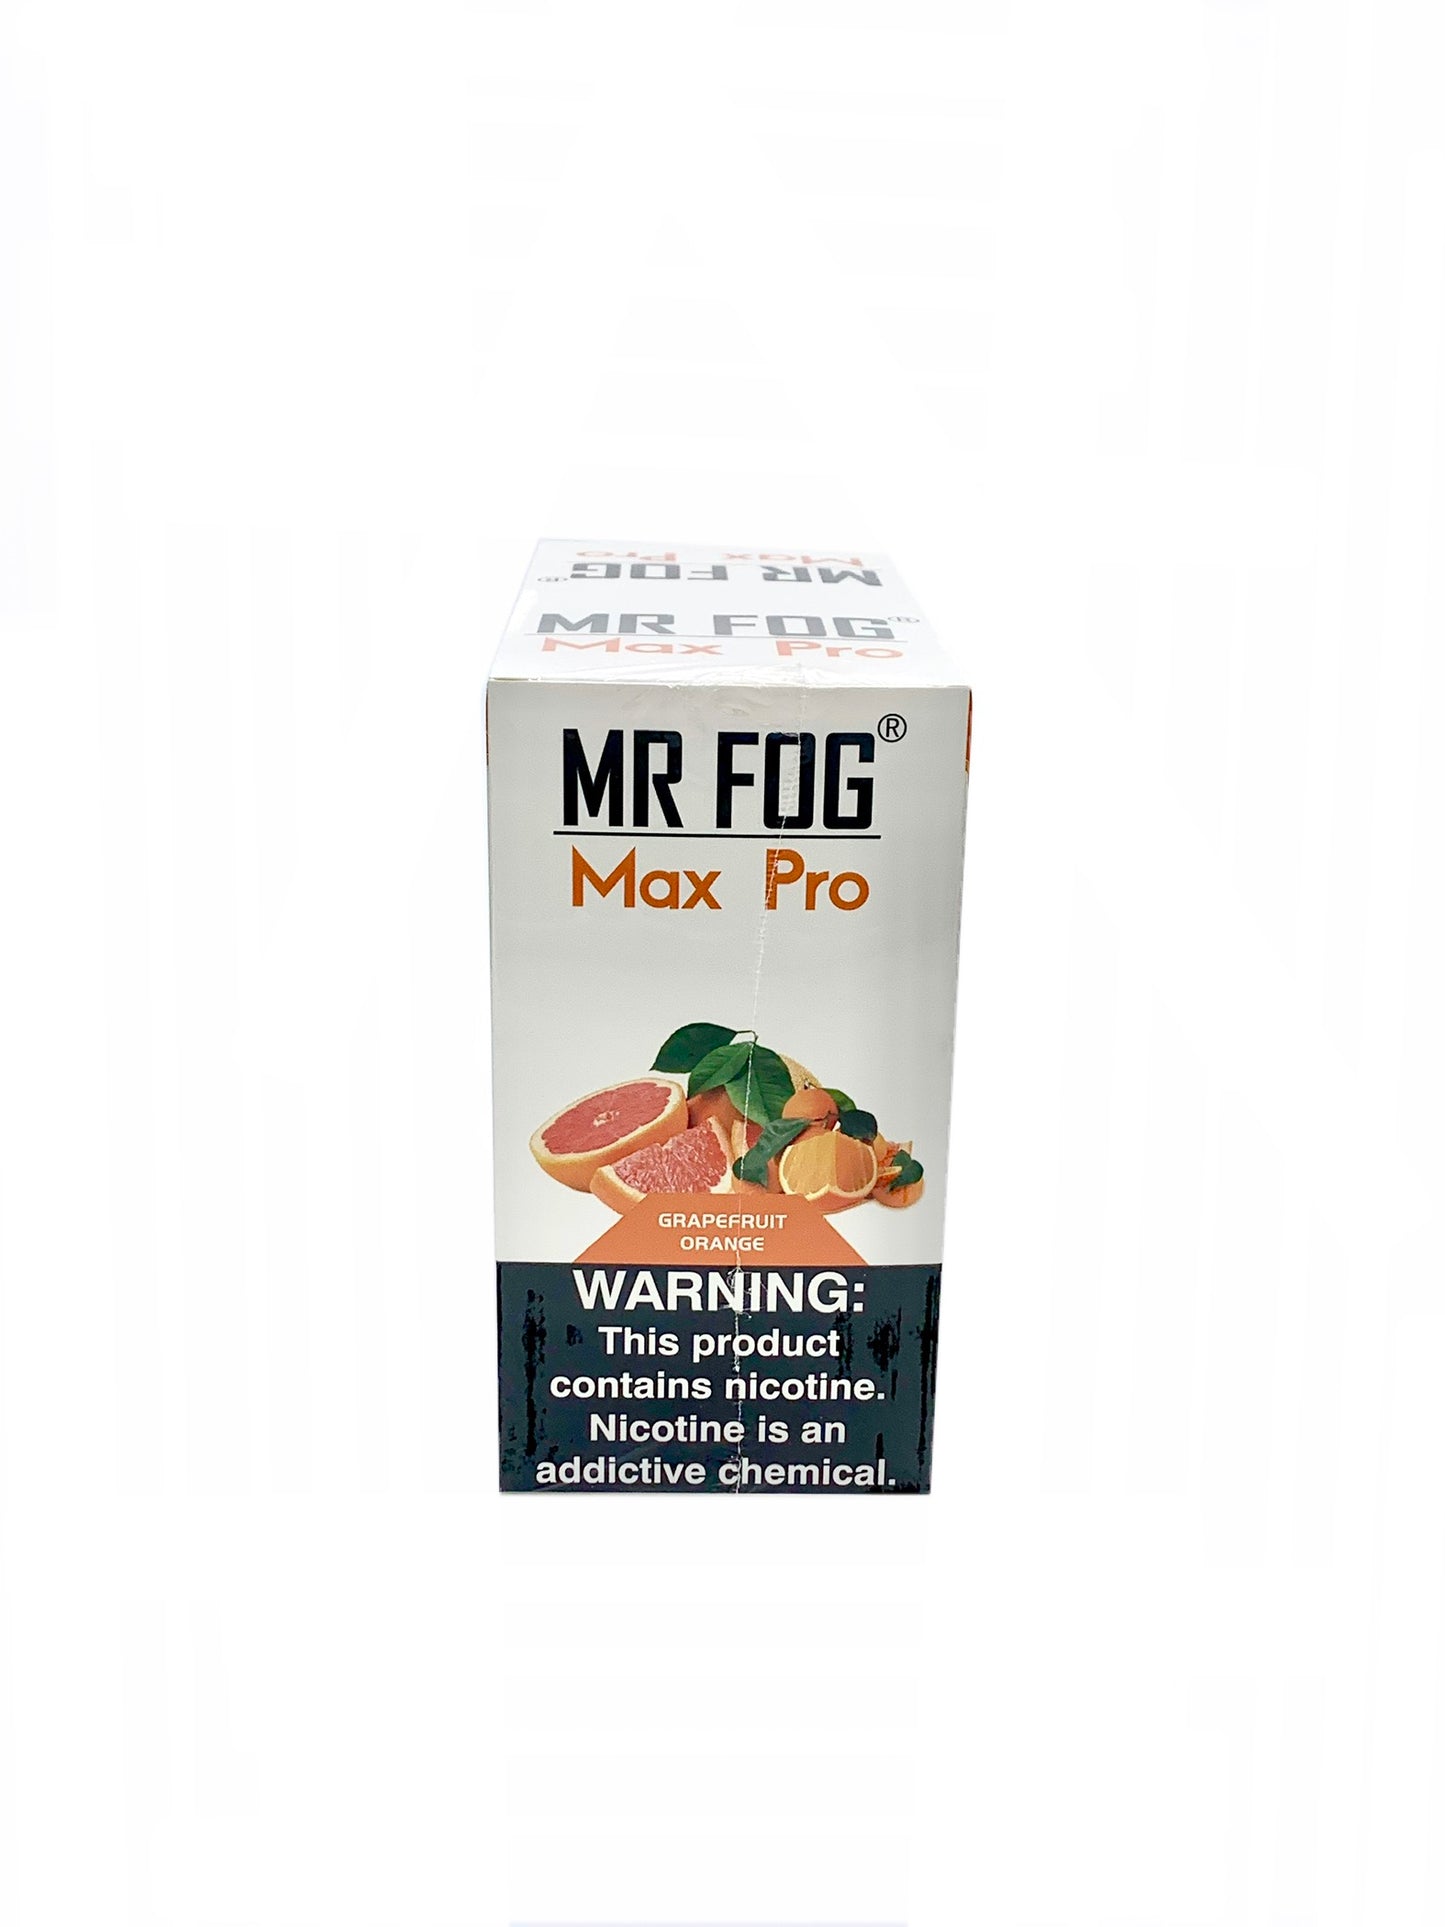 (10 unidades) Mr Fog Max Pro 1700 Puffs Pomelo Naranja $4.5 c/u